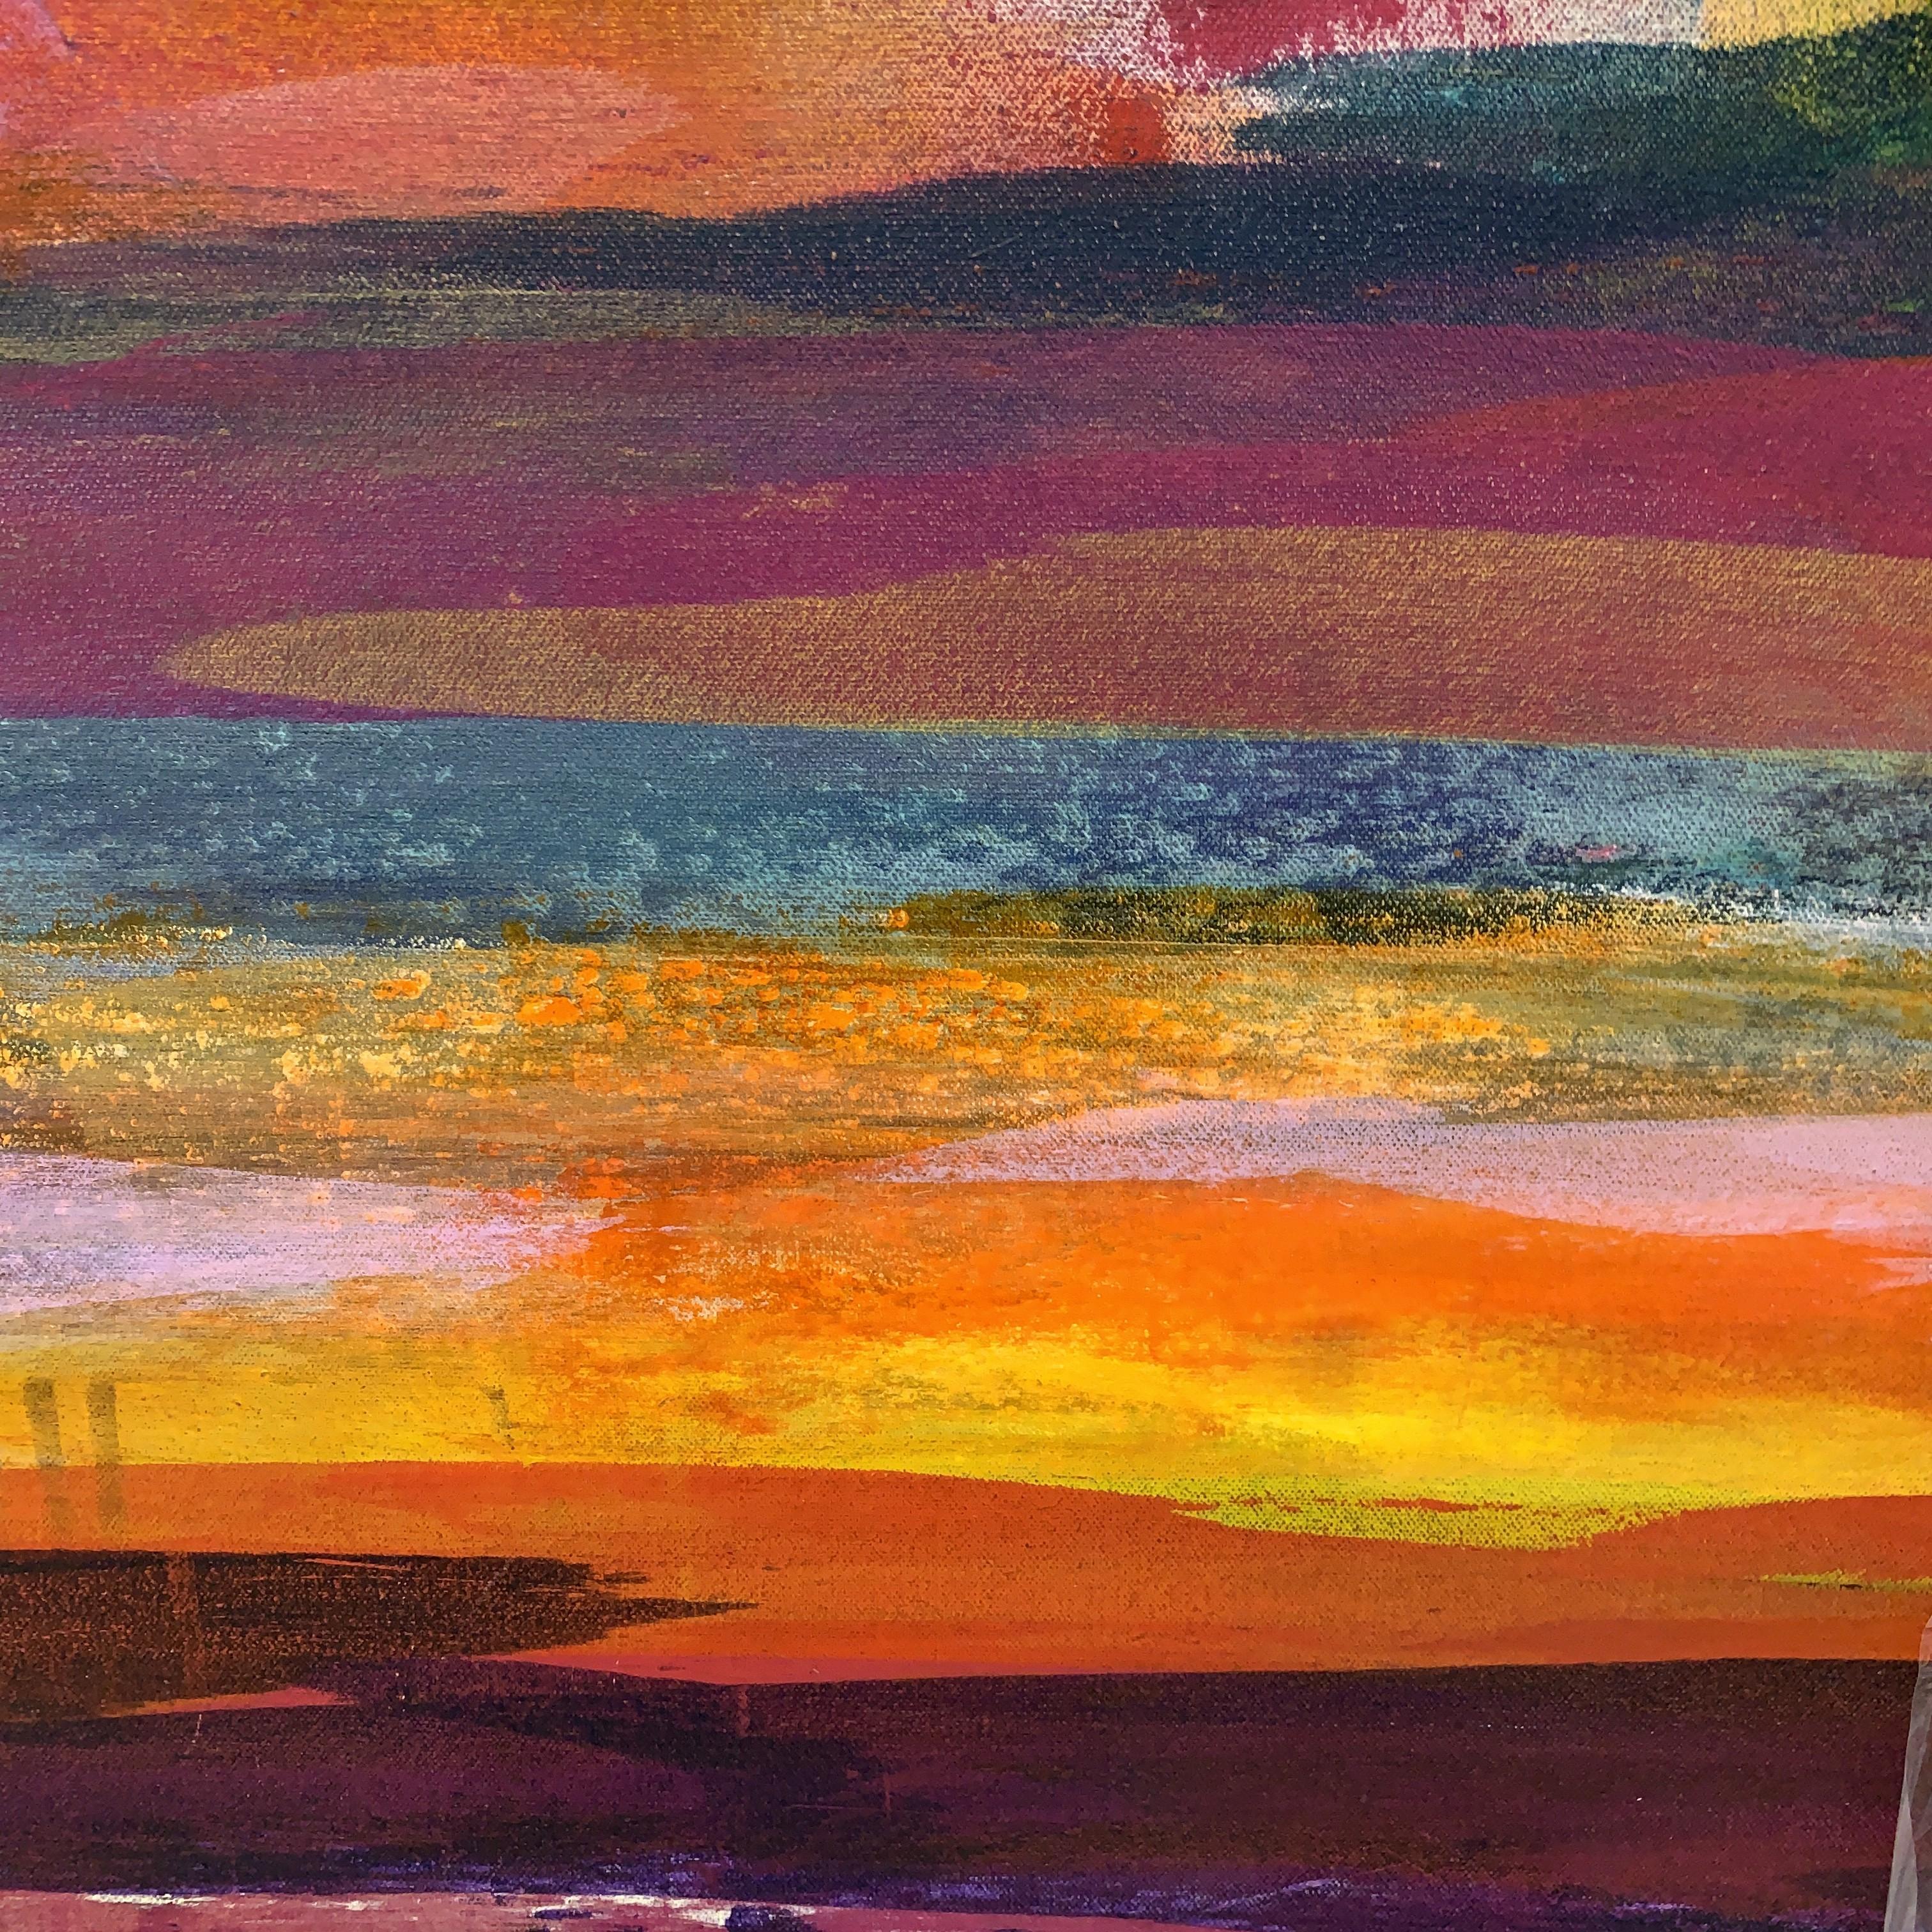 Jane Wachman
Sables brûlants
Peinture contemporaine originale
Peinture acrylique sur toile
Taille de la toile : H 63cm x L 63cm x P 4cm
Taille du cadre : H 66cm x L 66cm x P 5,5cm
Vendu encadré dans un cadre flottant blanc
Expédition